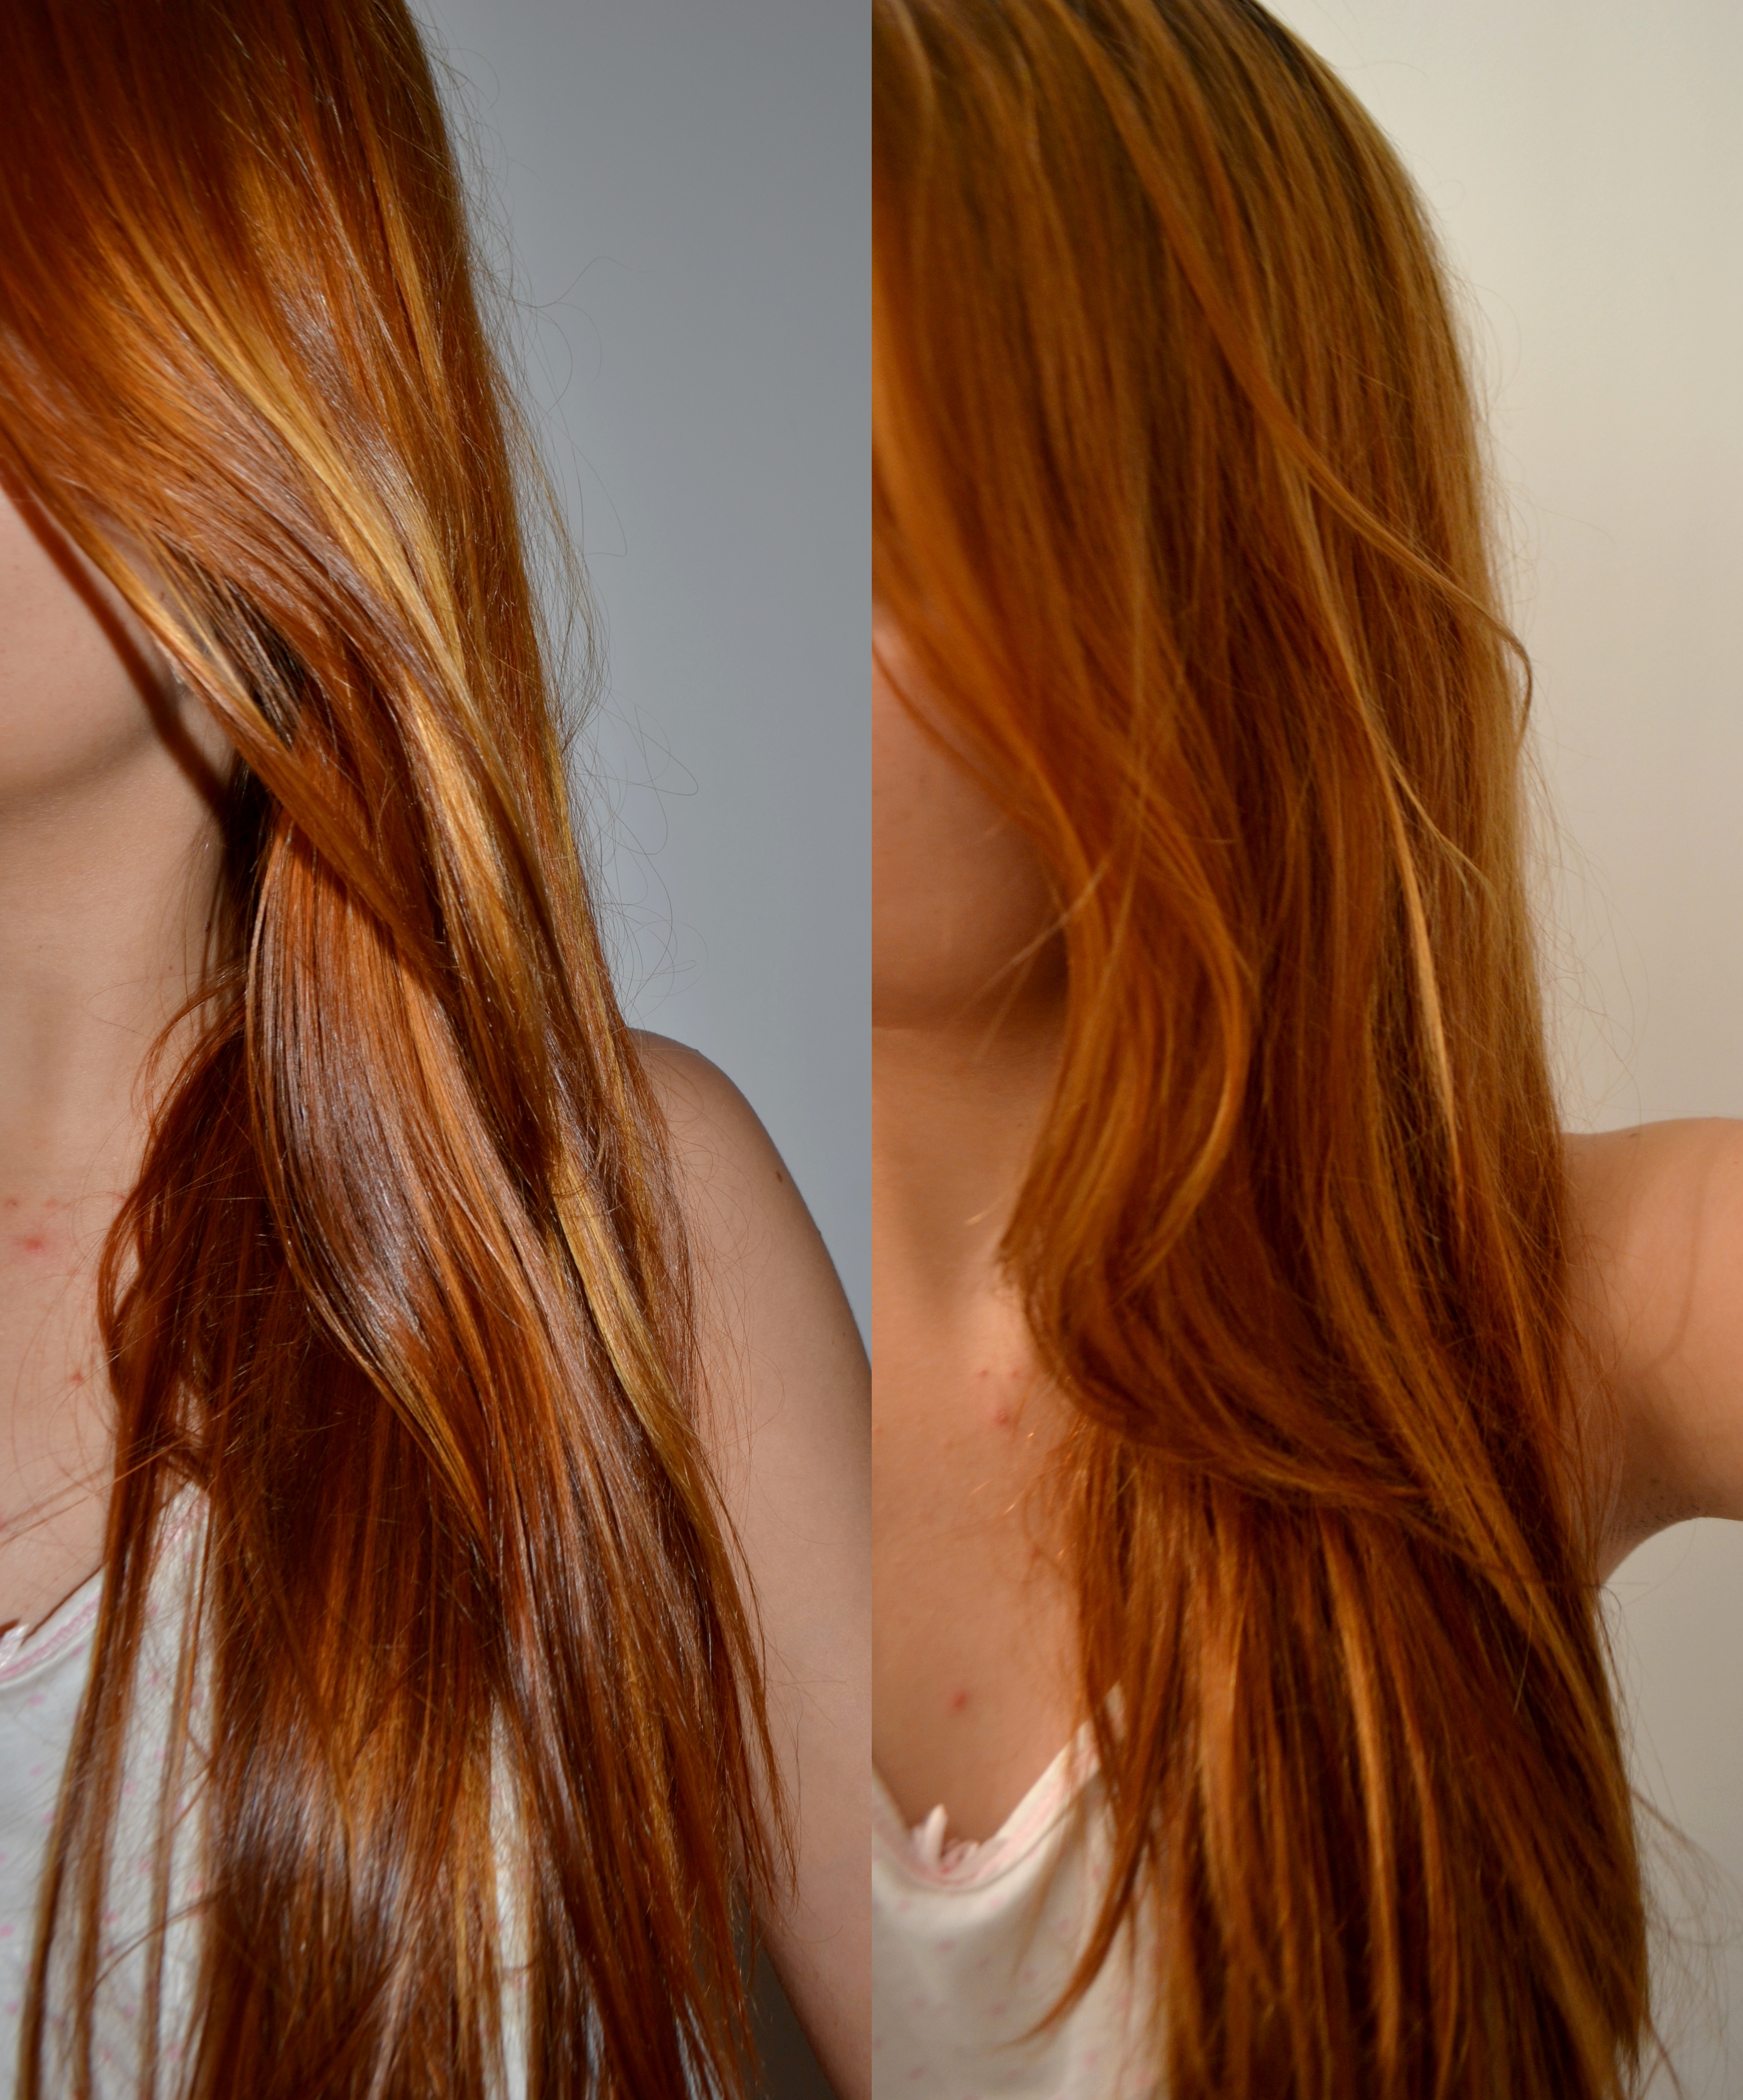 Resultado de imagem para igora 9.7  Tinturas de cabelo vermelhas, Cores de  cabelo, Tinta de cabelo